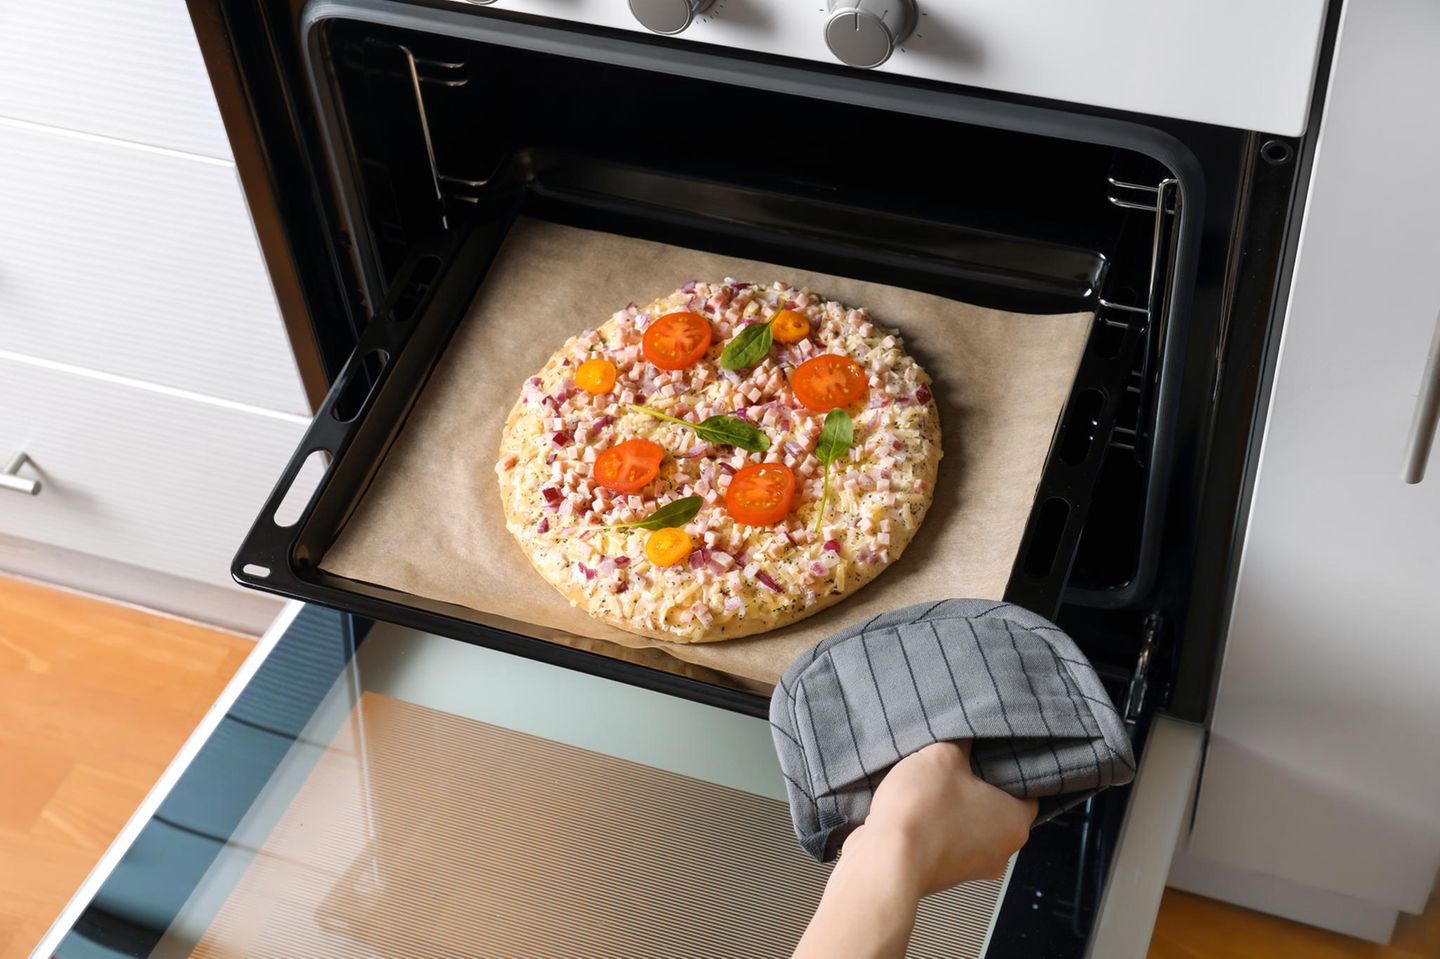 Ernsthaft?!: Bundesregierung will TK-Pizza kleiner machen